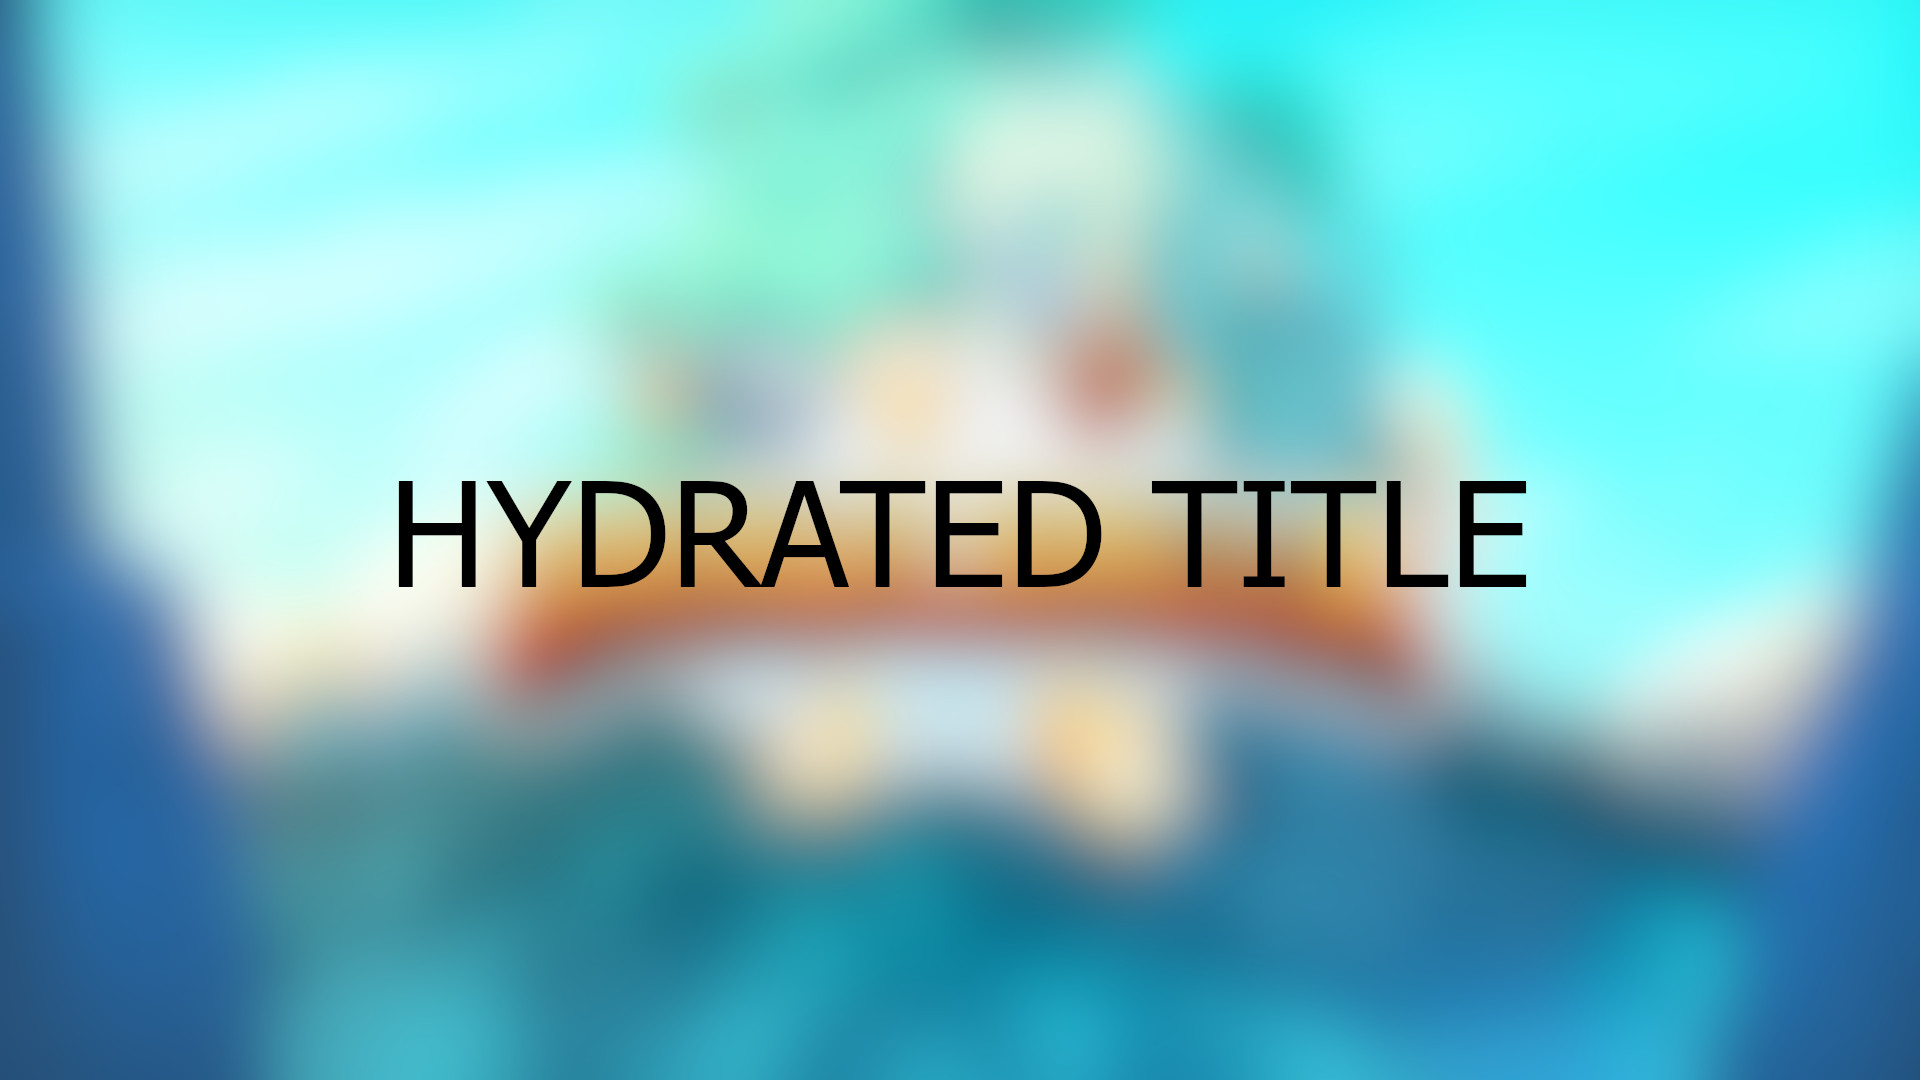 [$ 0.29] Brawlhalla - Hydrated Title DLC CD Key